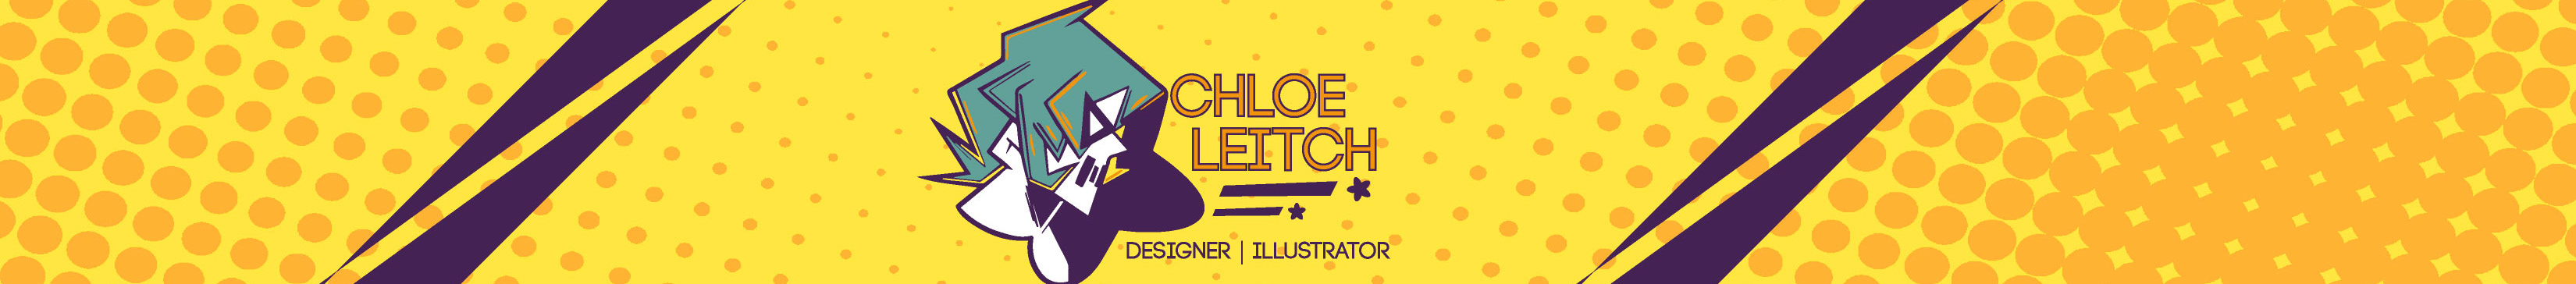 Chloe Leitch のプロファイルバナー